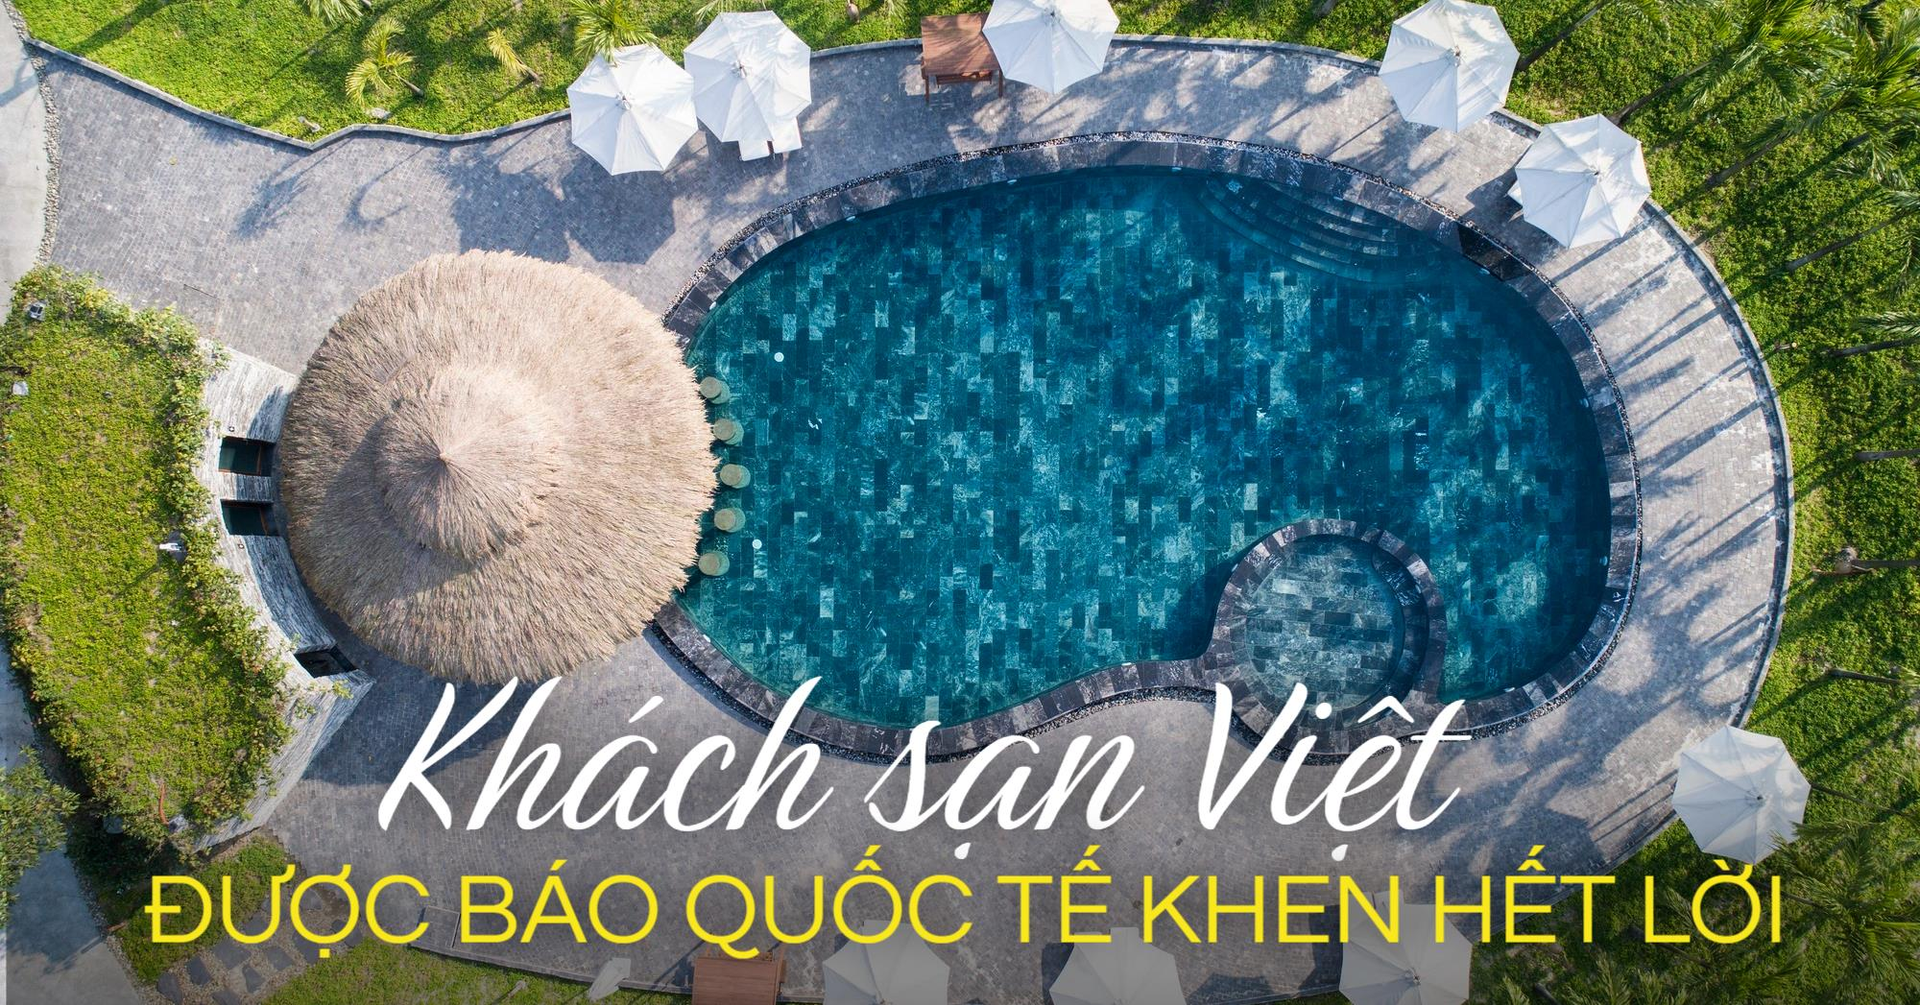 Cận cảnh điểm du lịch nghỉ dưỡng Việt Nam vừa nhận nhiều giải thưởng quốc tế: Sở hữu mạch khoáng nóng thiên nhiên mà không ai có thể chối từ